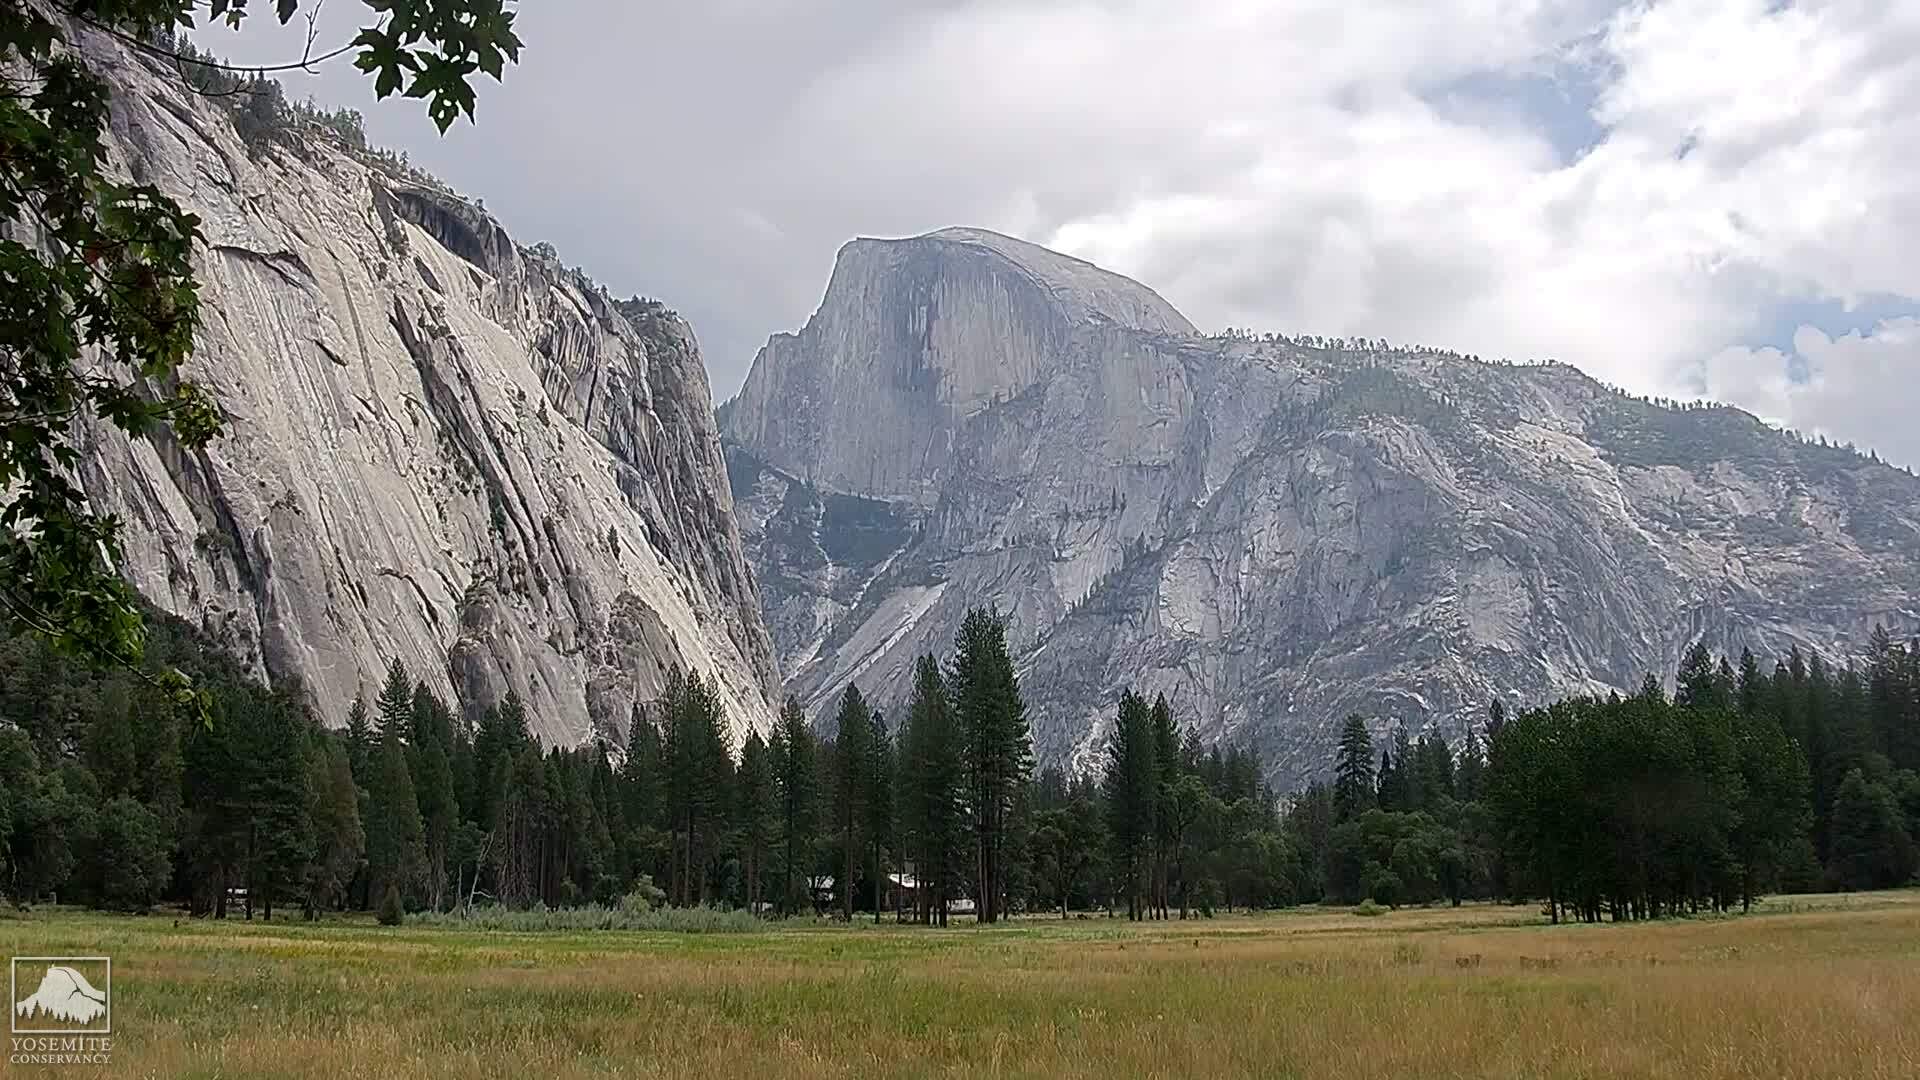 Webcam Yosemite National Park, California: Live Web Cam ...